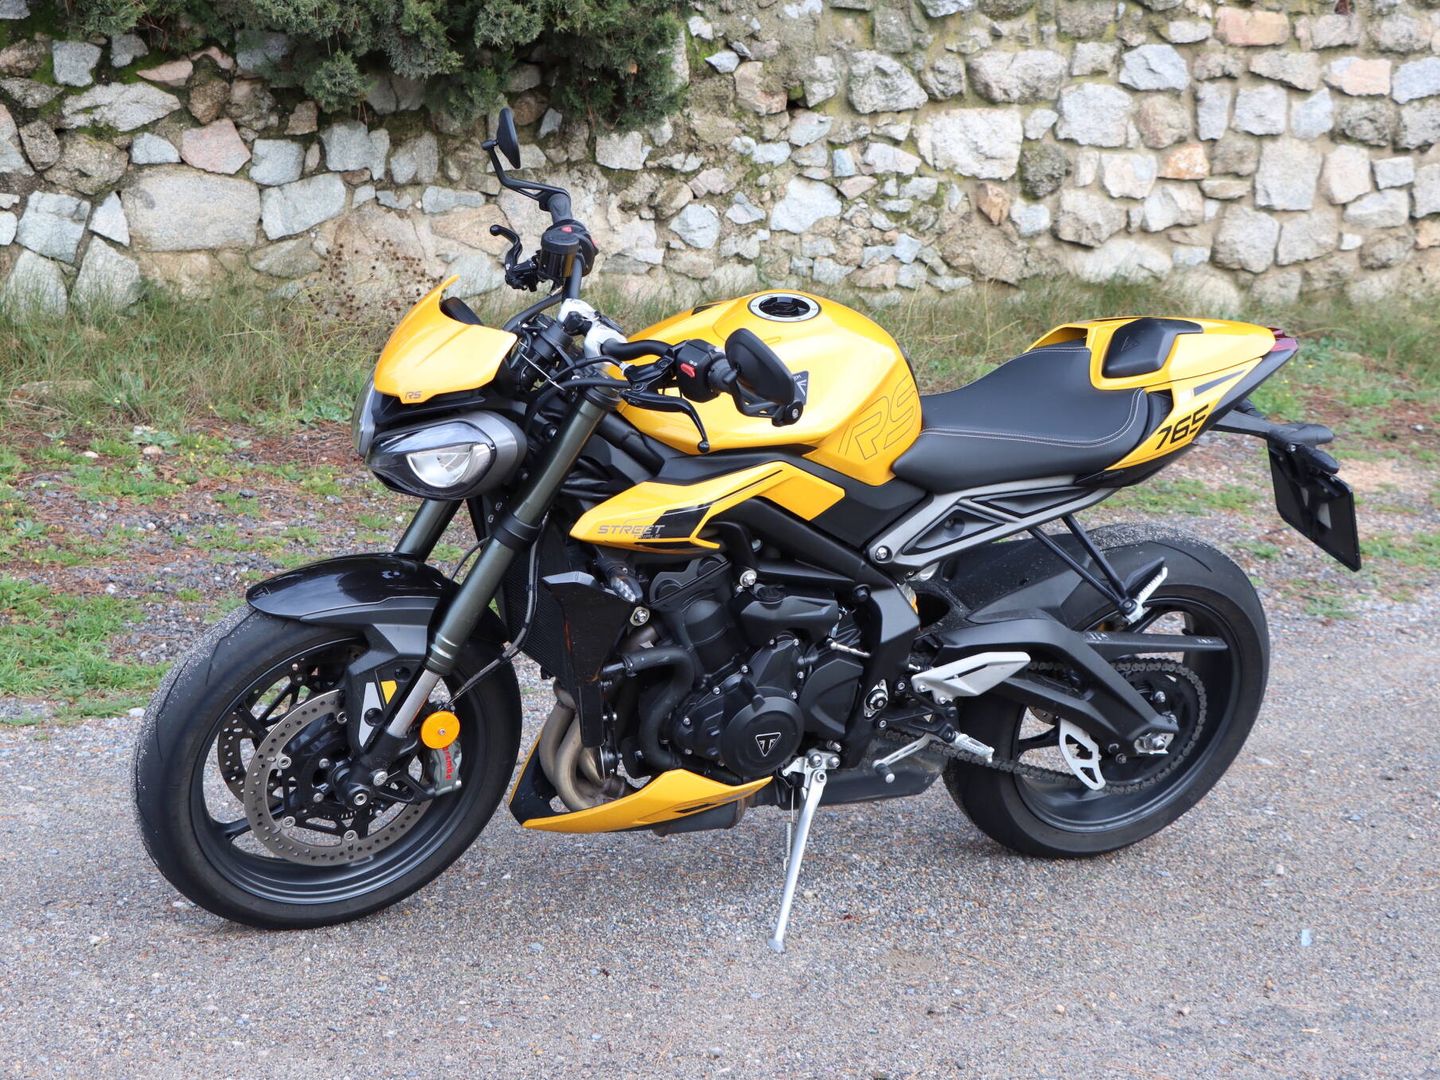 Su impecable apariencia hace de la Street Triple 765 RS una moto atractiva por su diseño deportivo.